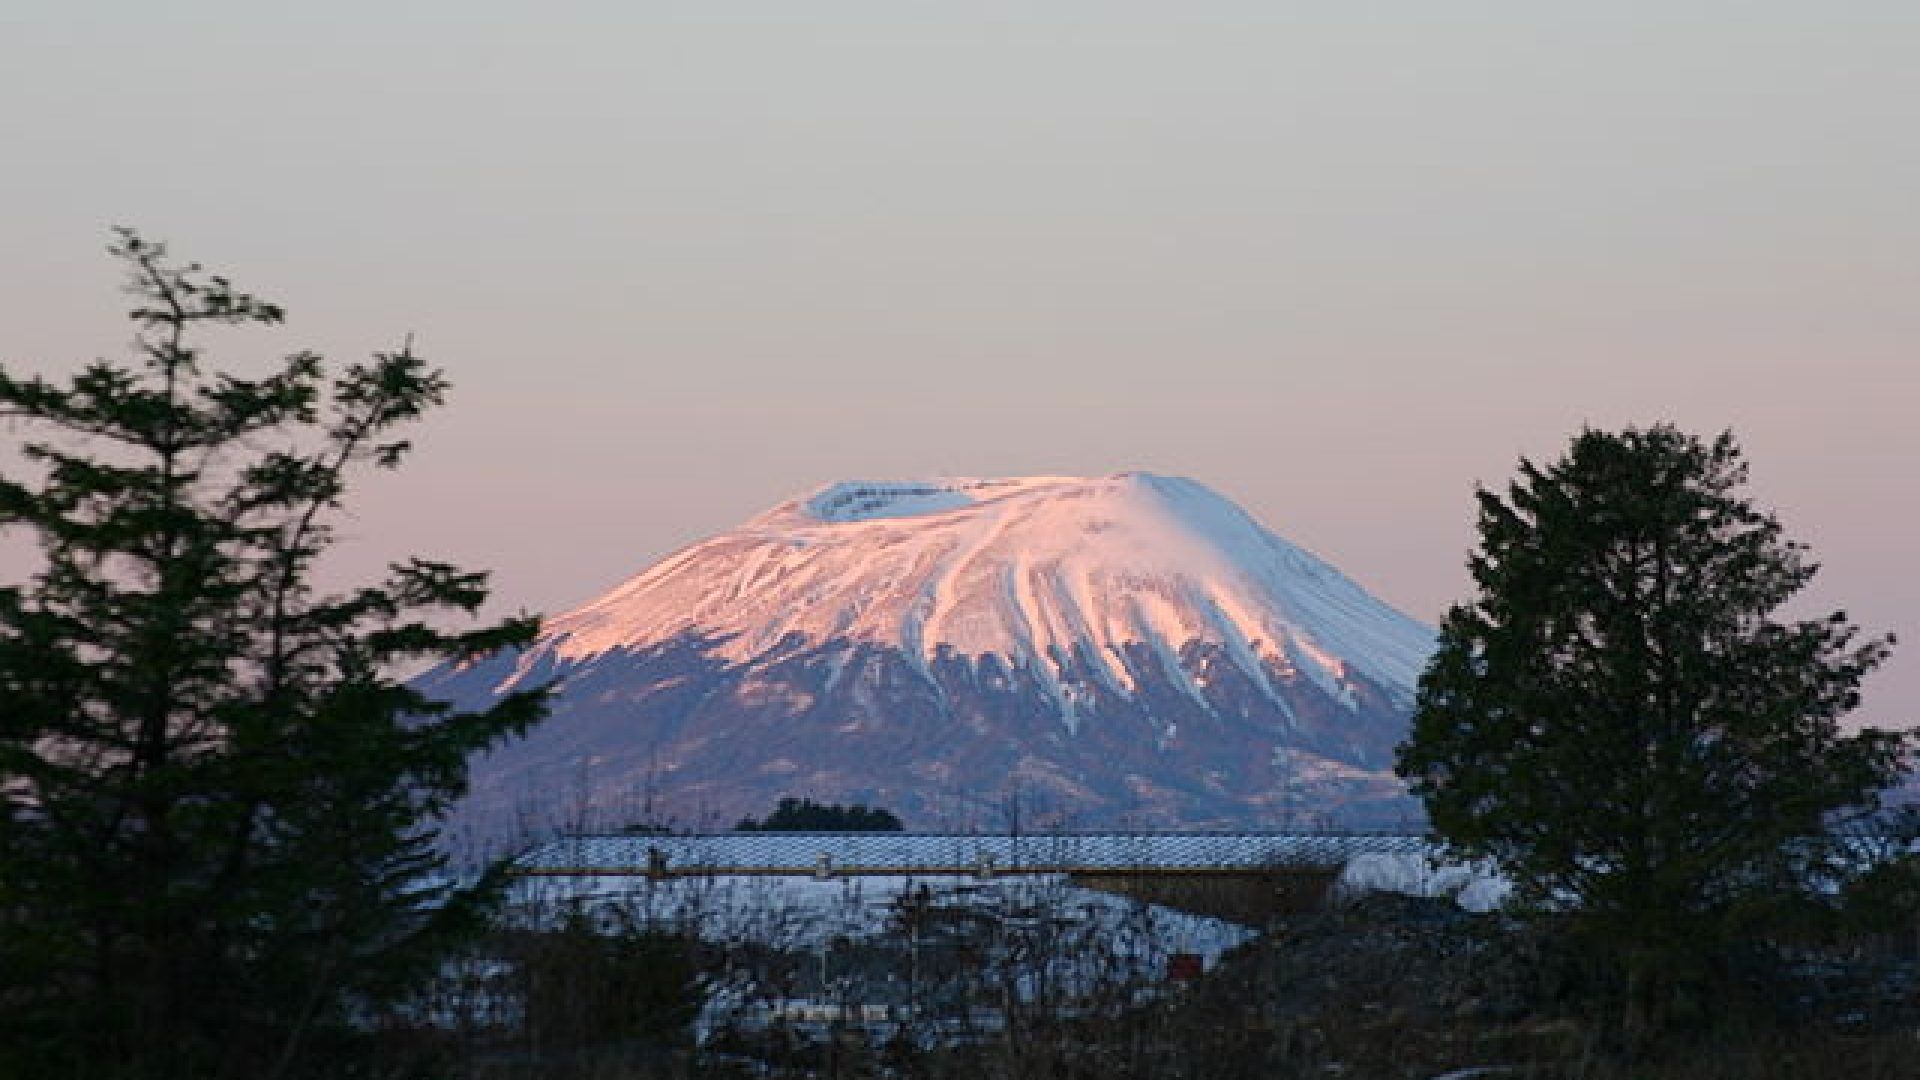 Ph. Credit: Duncan Mariott - Alaska Volcano Observatory